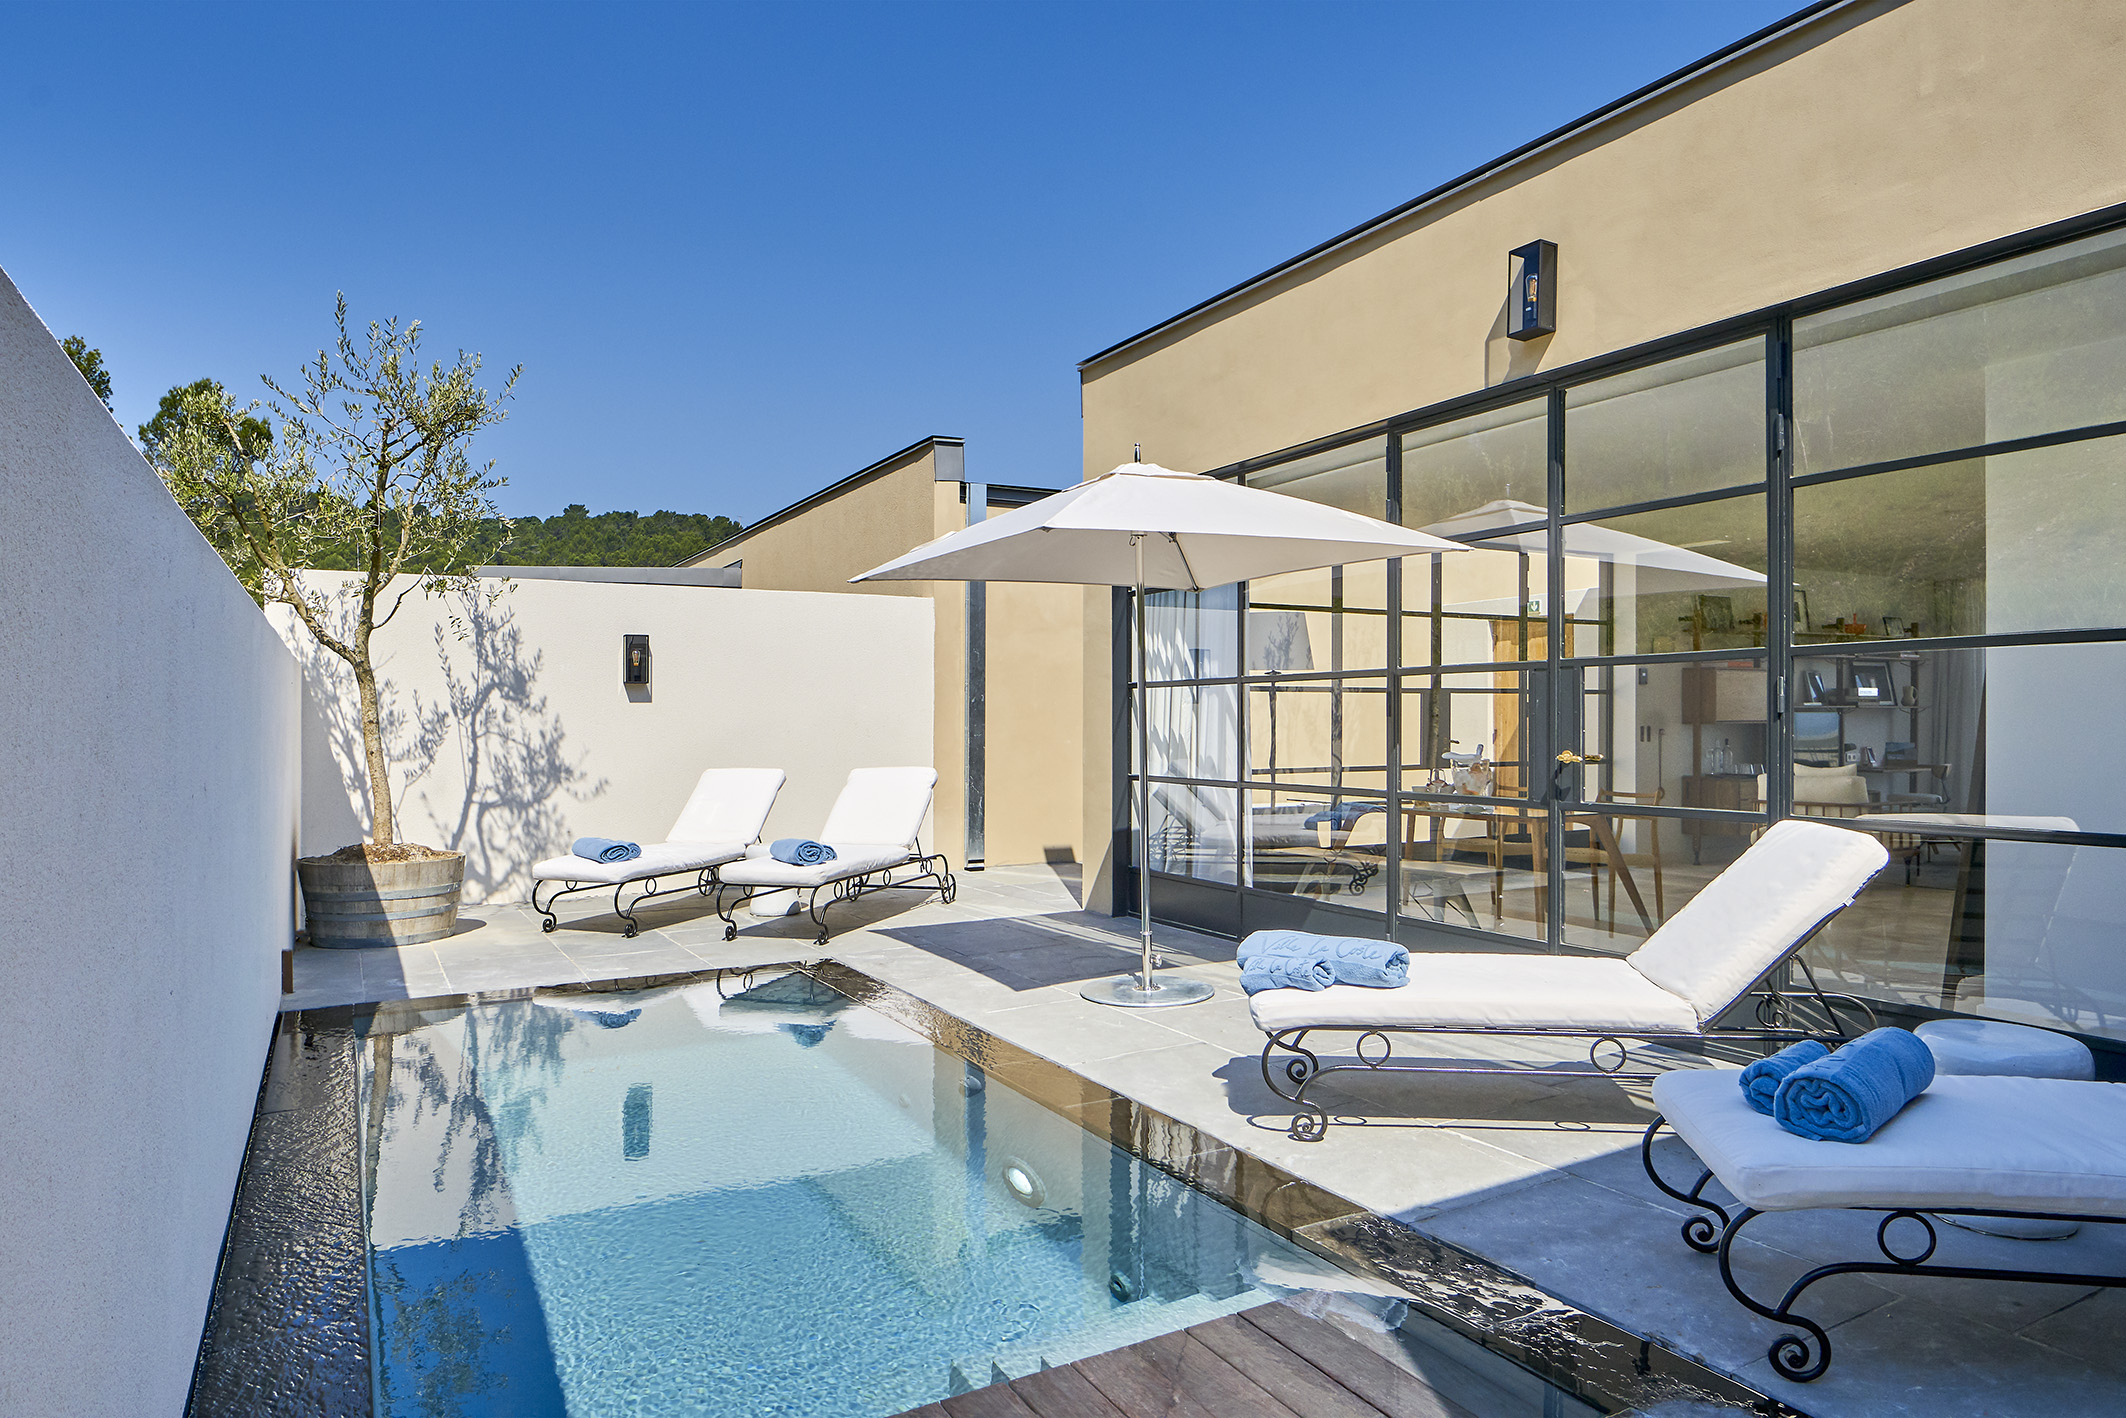 Suite De Luxe En Provence Avec Piscine Privée | Hotêl Villa ... pour Hotel Avec Piscine Privée Dans La Chambre France